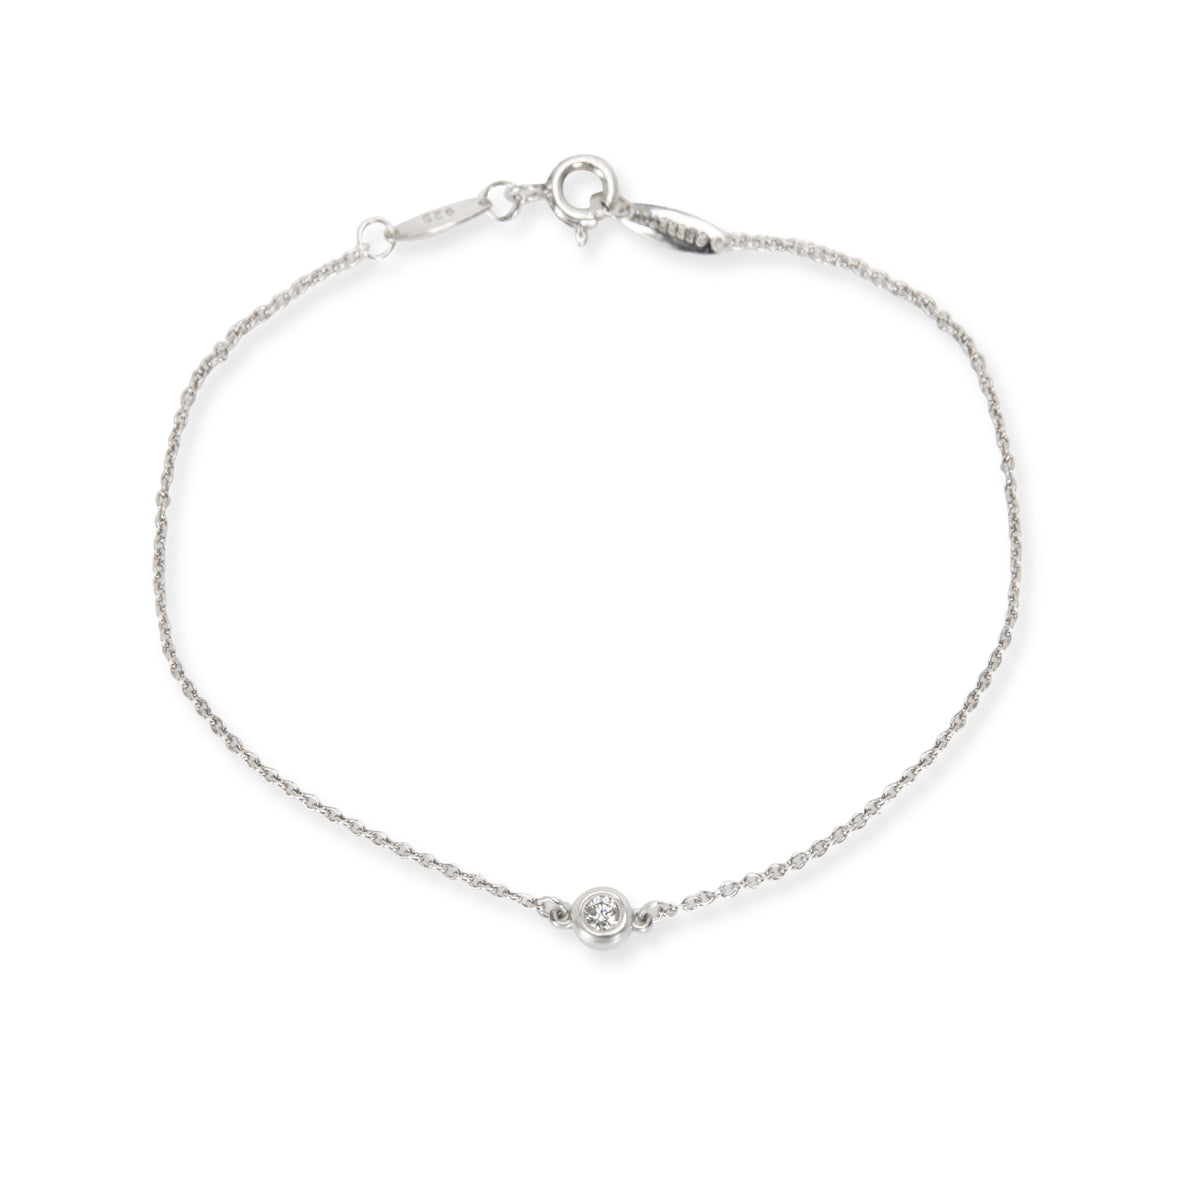 Tiffany & Co. Elsa Peretti Diamond Bracelet in Sterling Silver 0.07 CTW